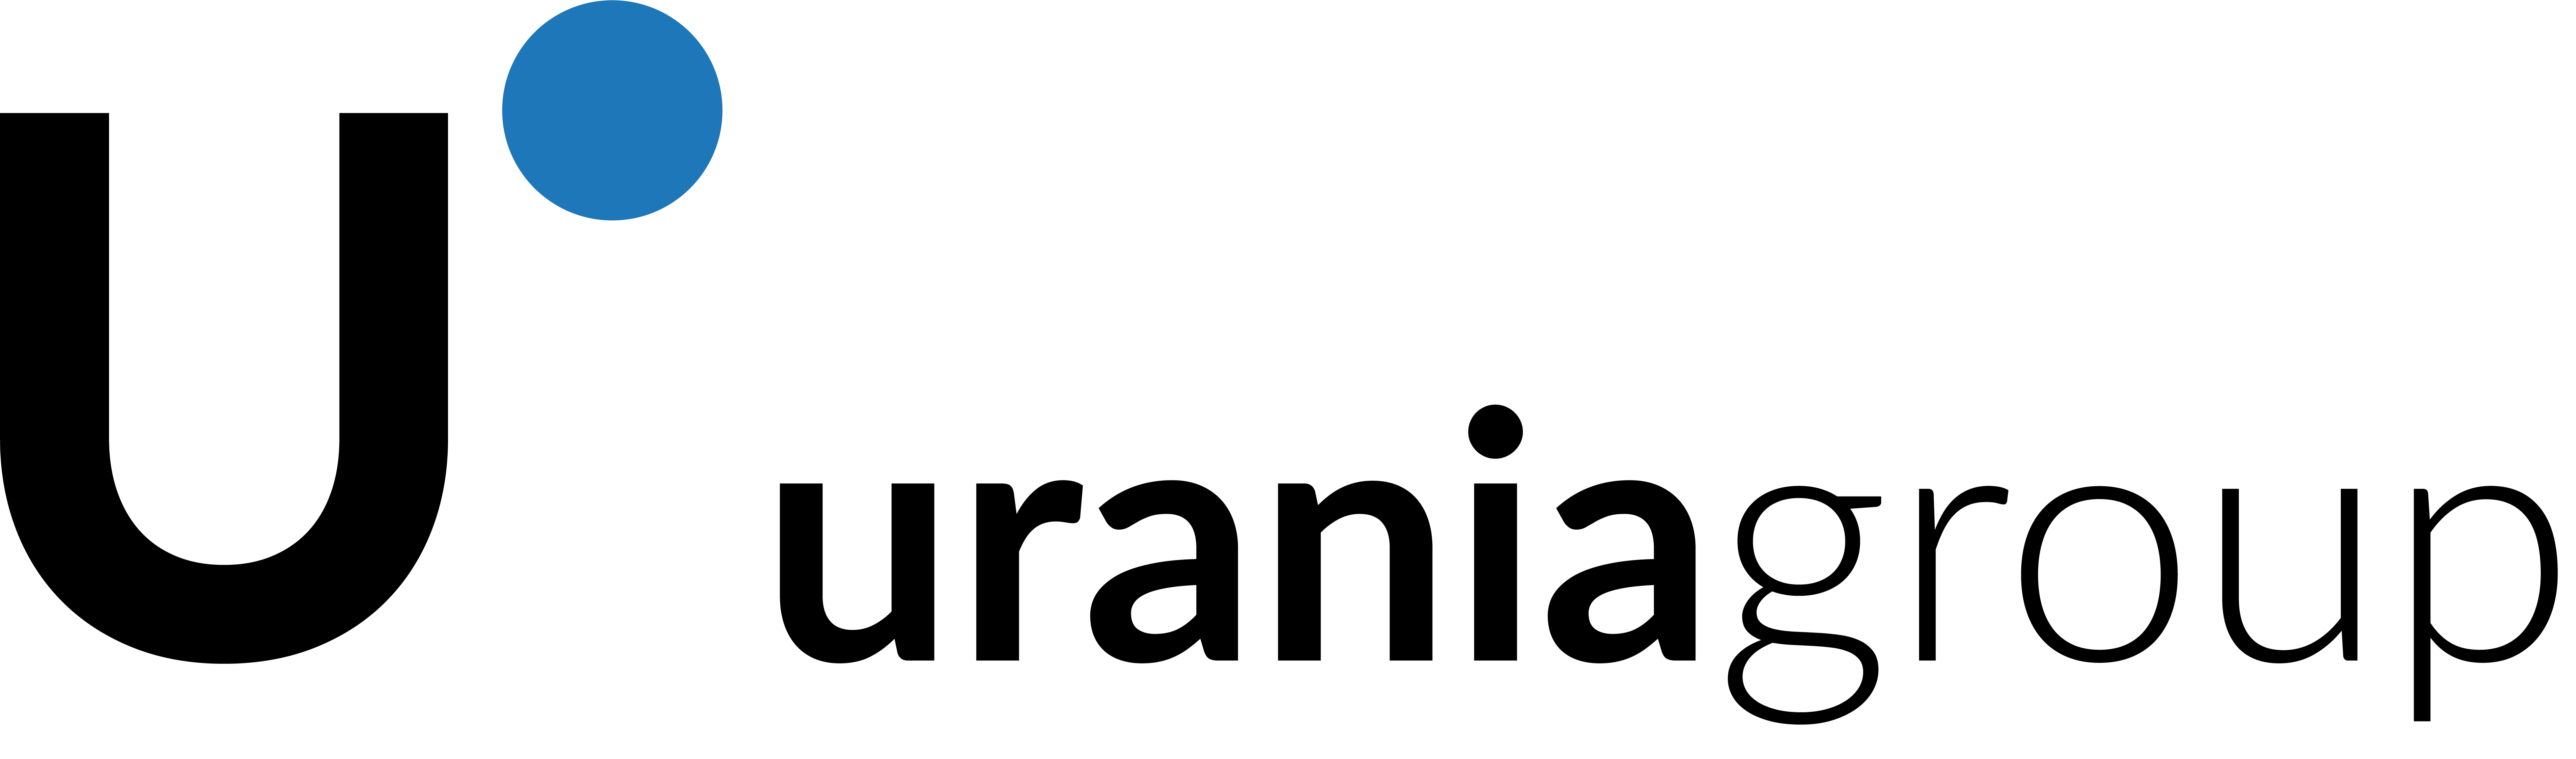 Modular Urania Group